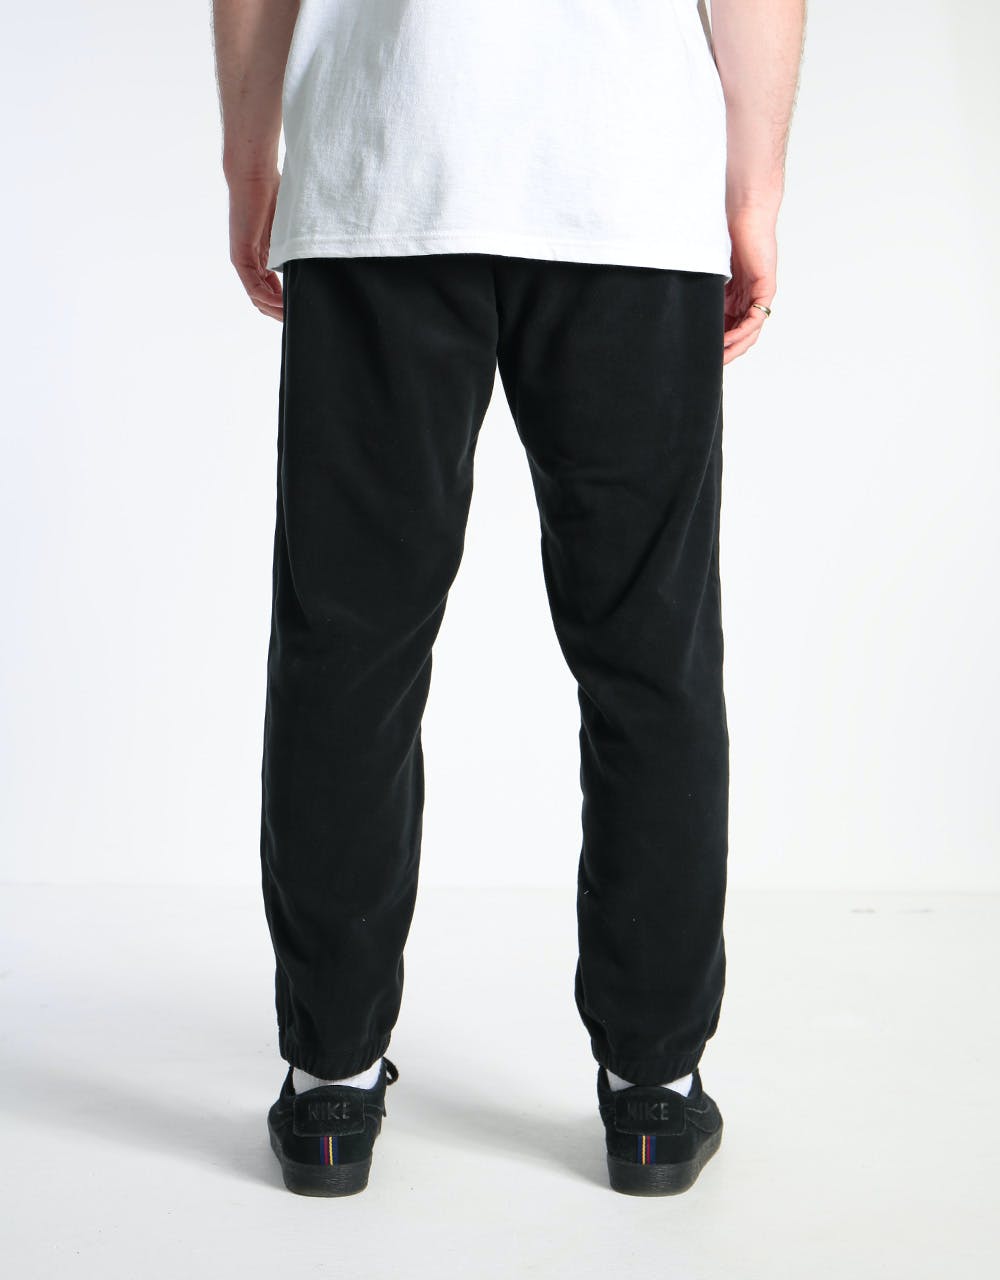 Nike SB Novelty Fleece Pant - Black/Sail